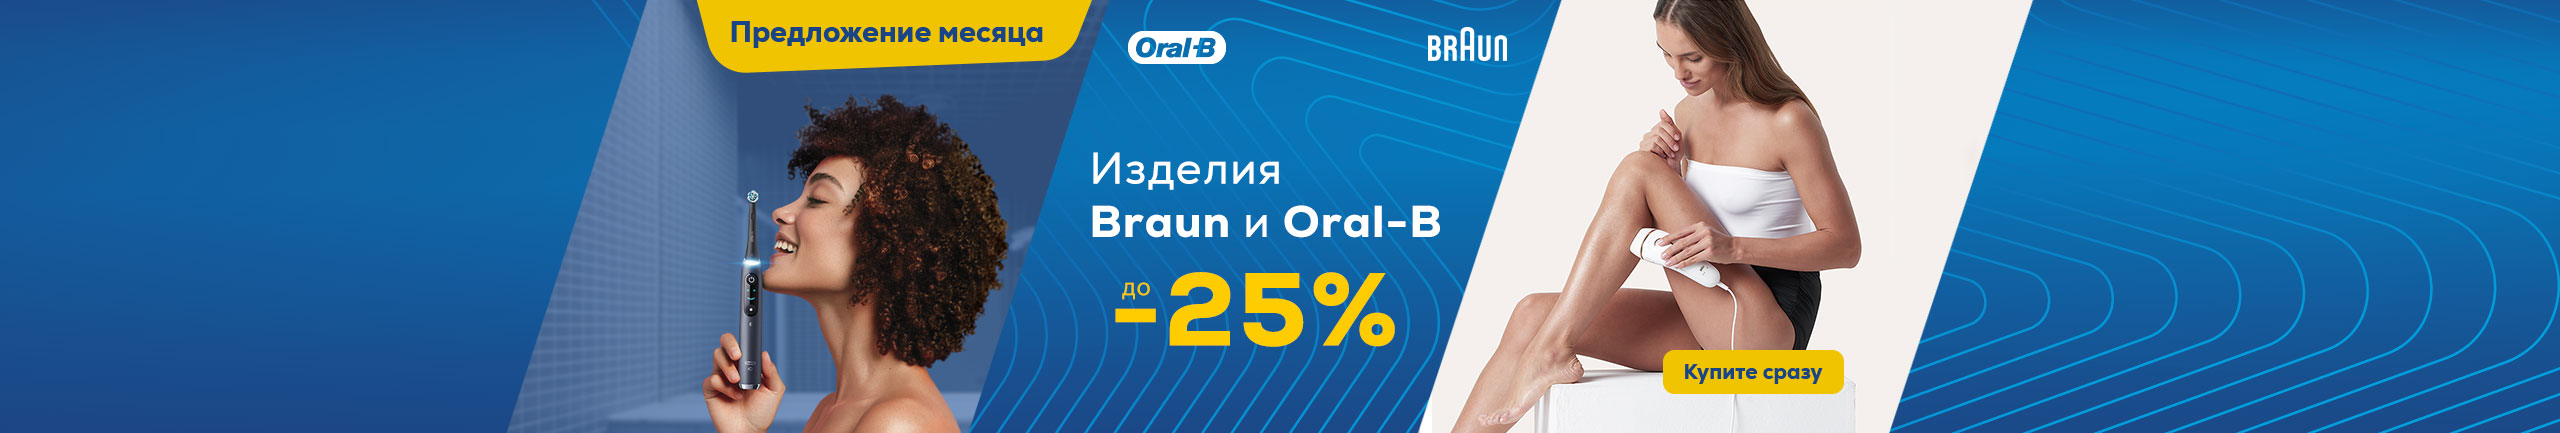 Изделия Braun и Oral-B до -25%